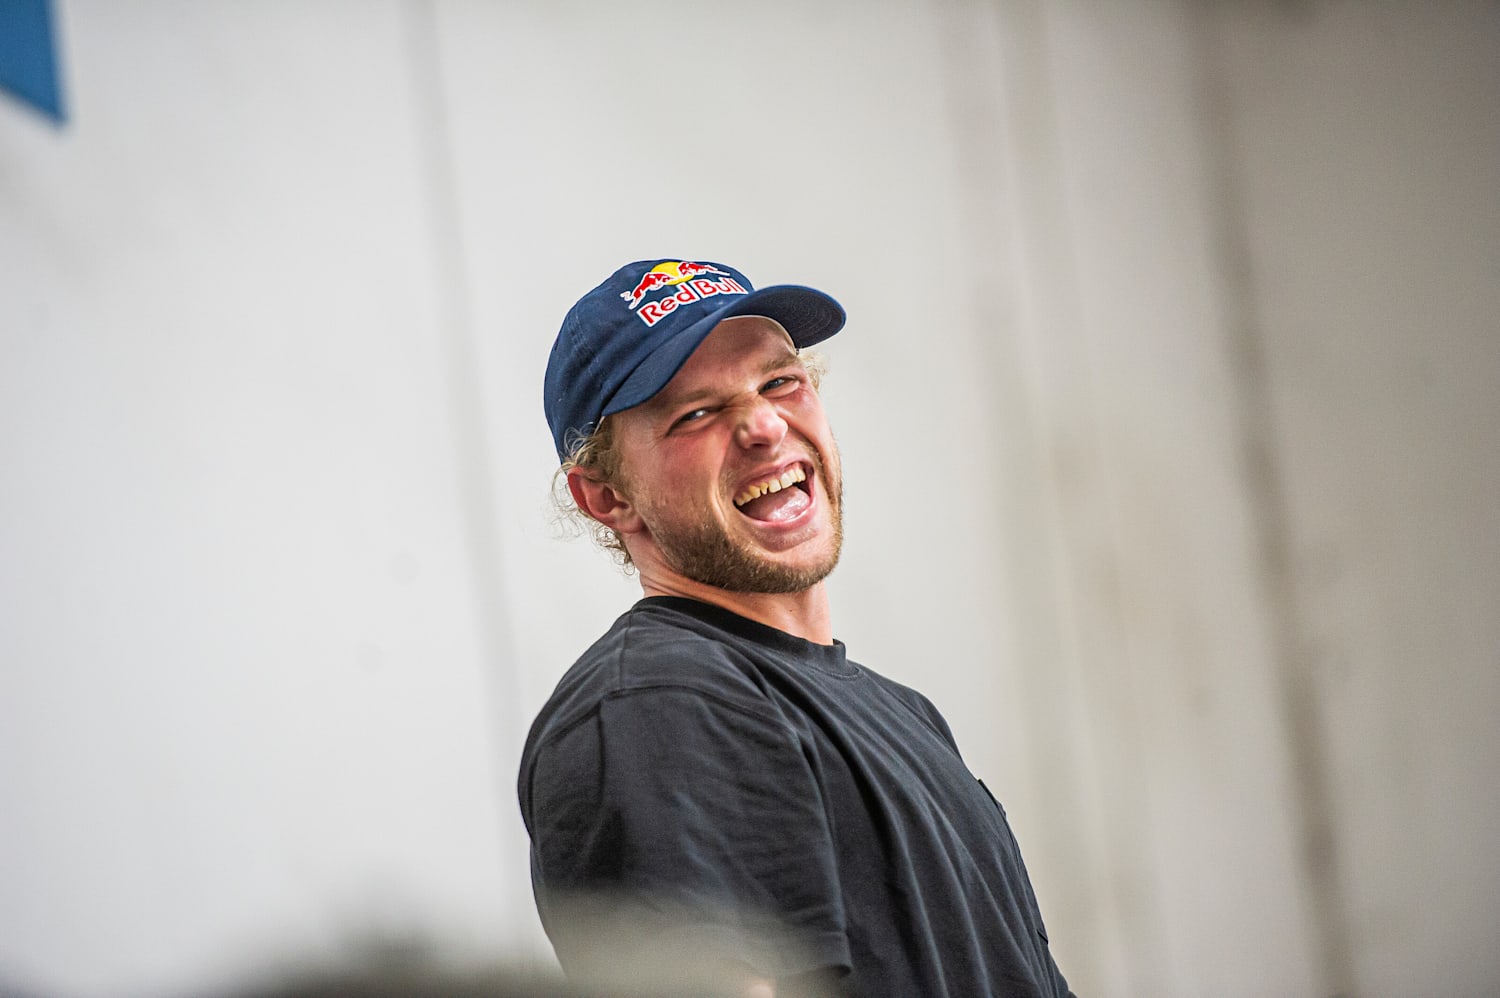 Jamie Foy: Skateboarding – Red Bull Athlete Profile